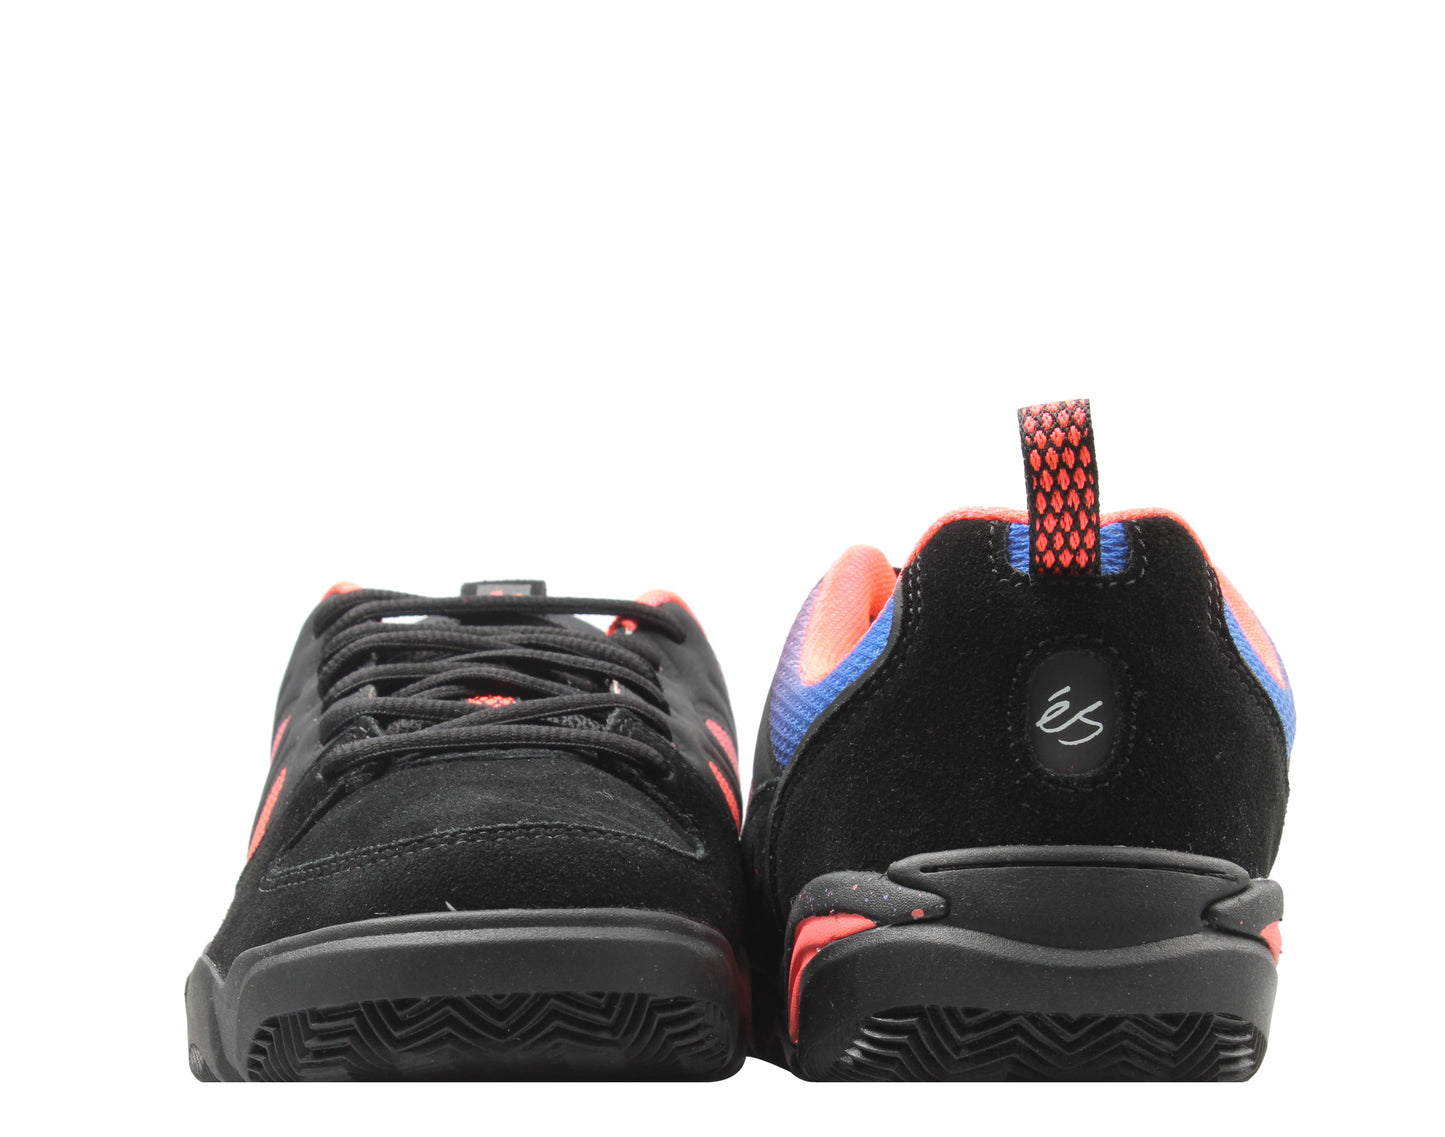 eS Footwear Silo Black/Purple Men's Skateboard Sneakers 5101000167550